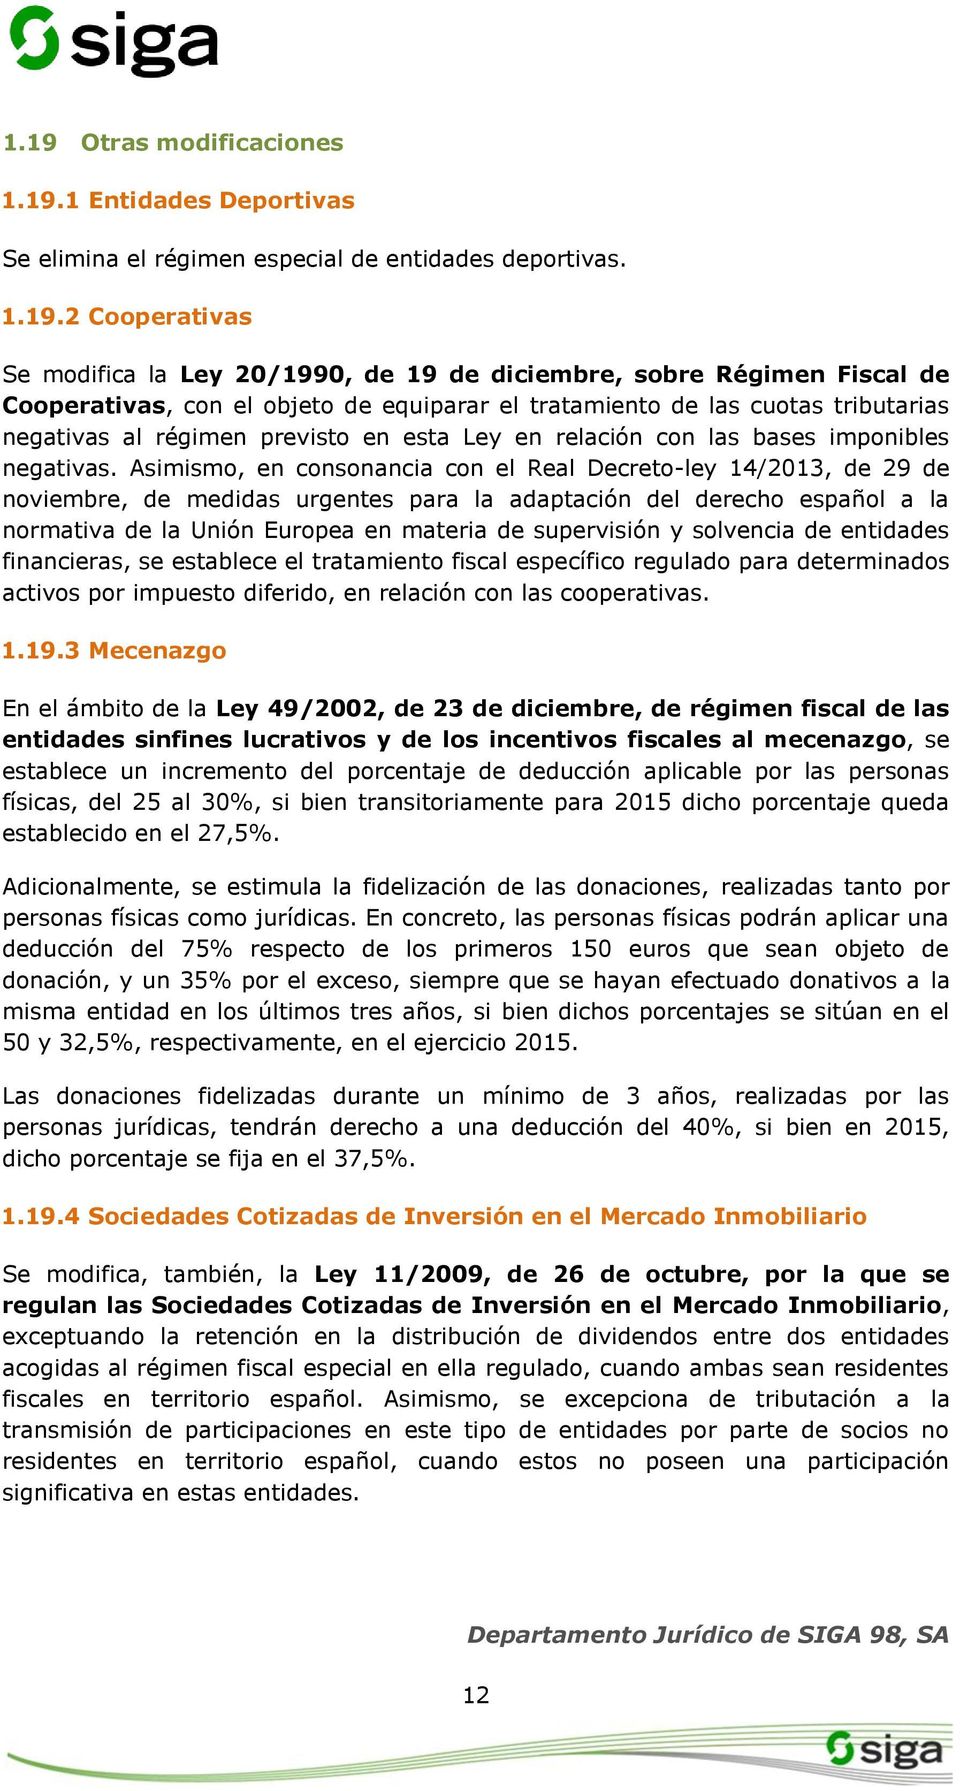 Asimismo, en consonancia con el Real Decreto-ley 14/2013, de 29 de noviembre, de medidas urgentes para la adaptación del derecho español a la normativa de la Unión Europea en materia de supervisión y